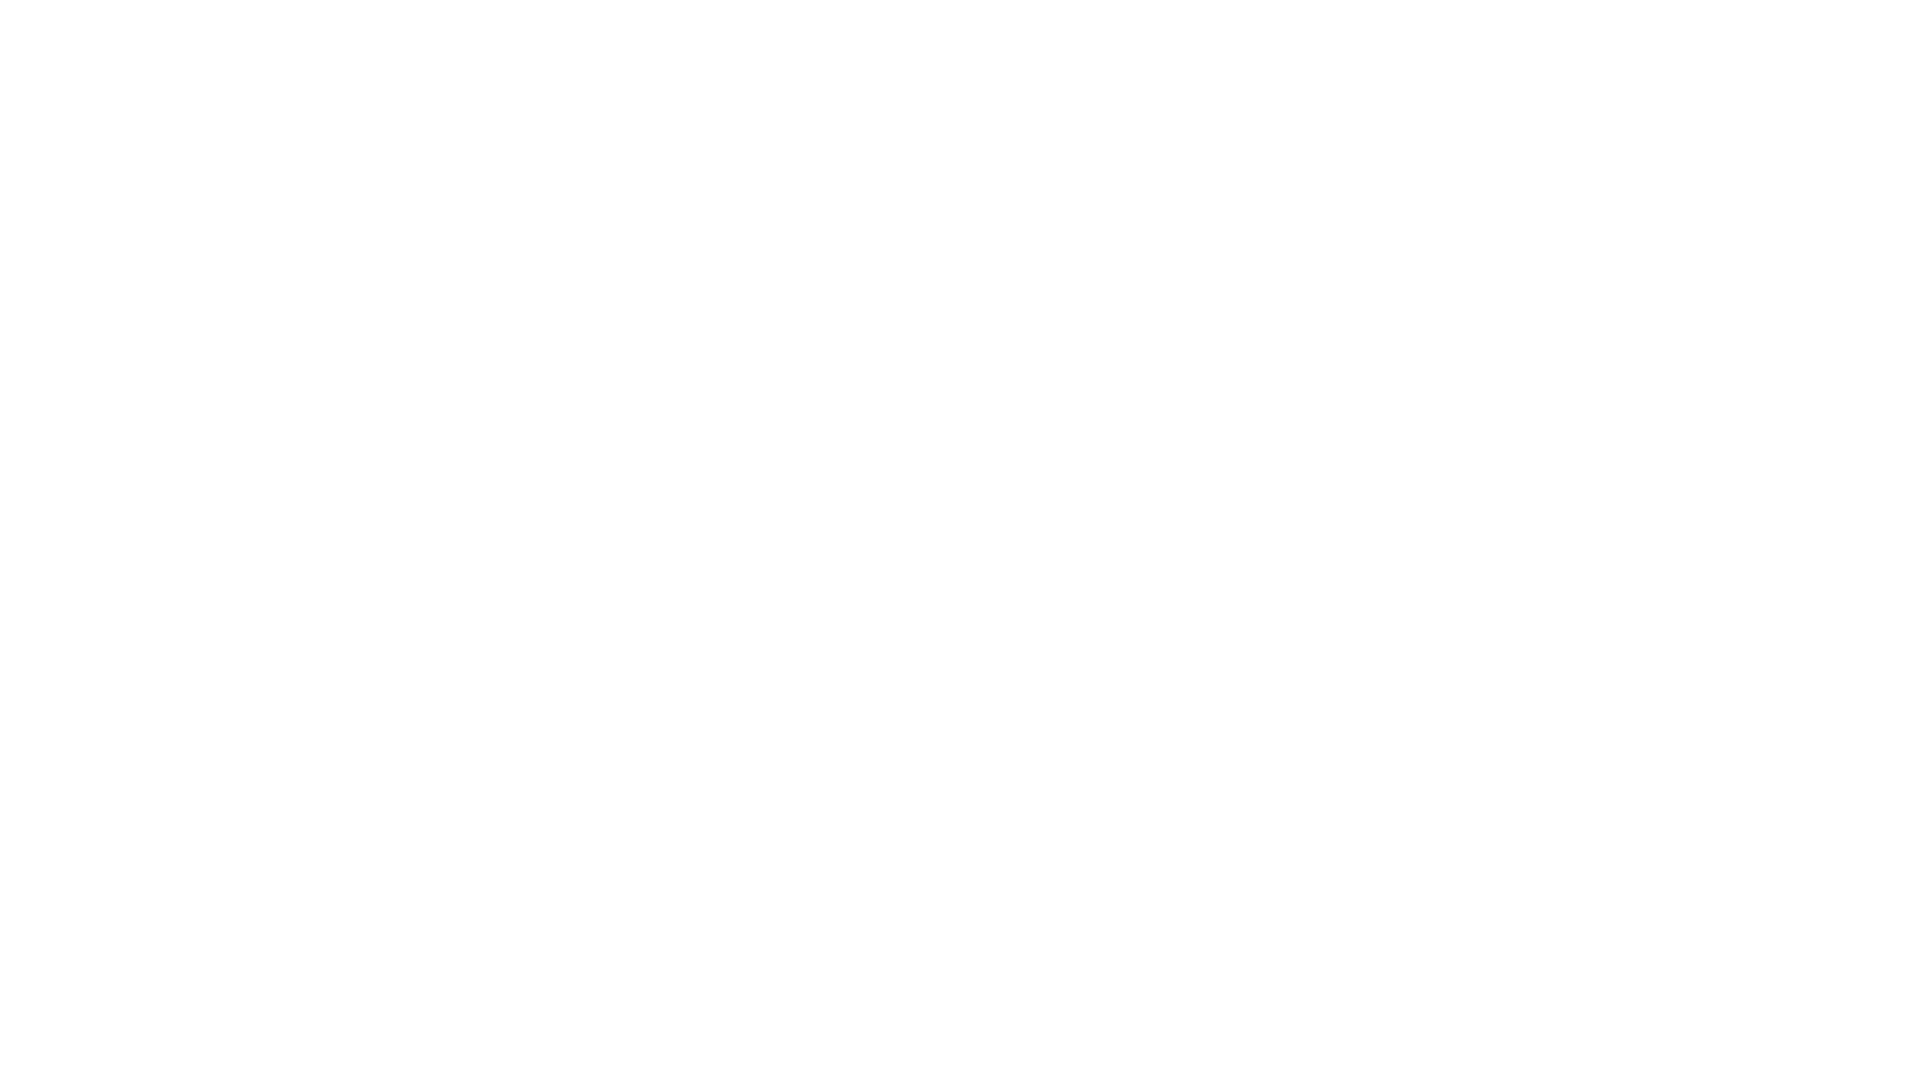 Quetzaltrekkers volcanoes help kids. Hike clipart trekker